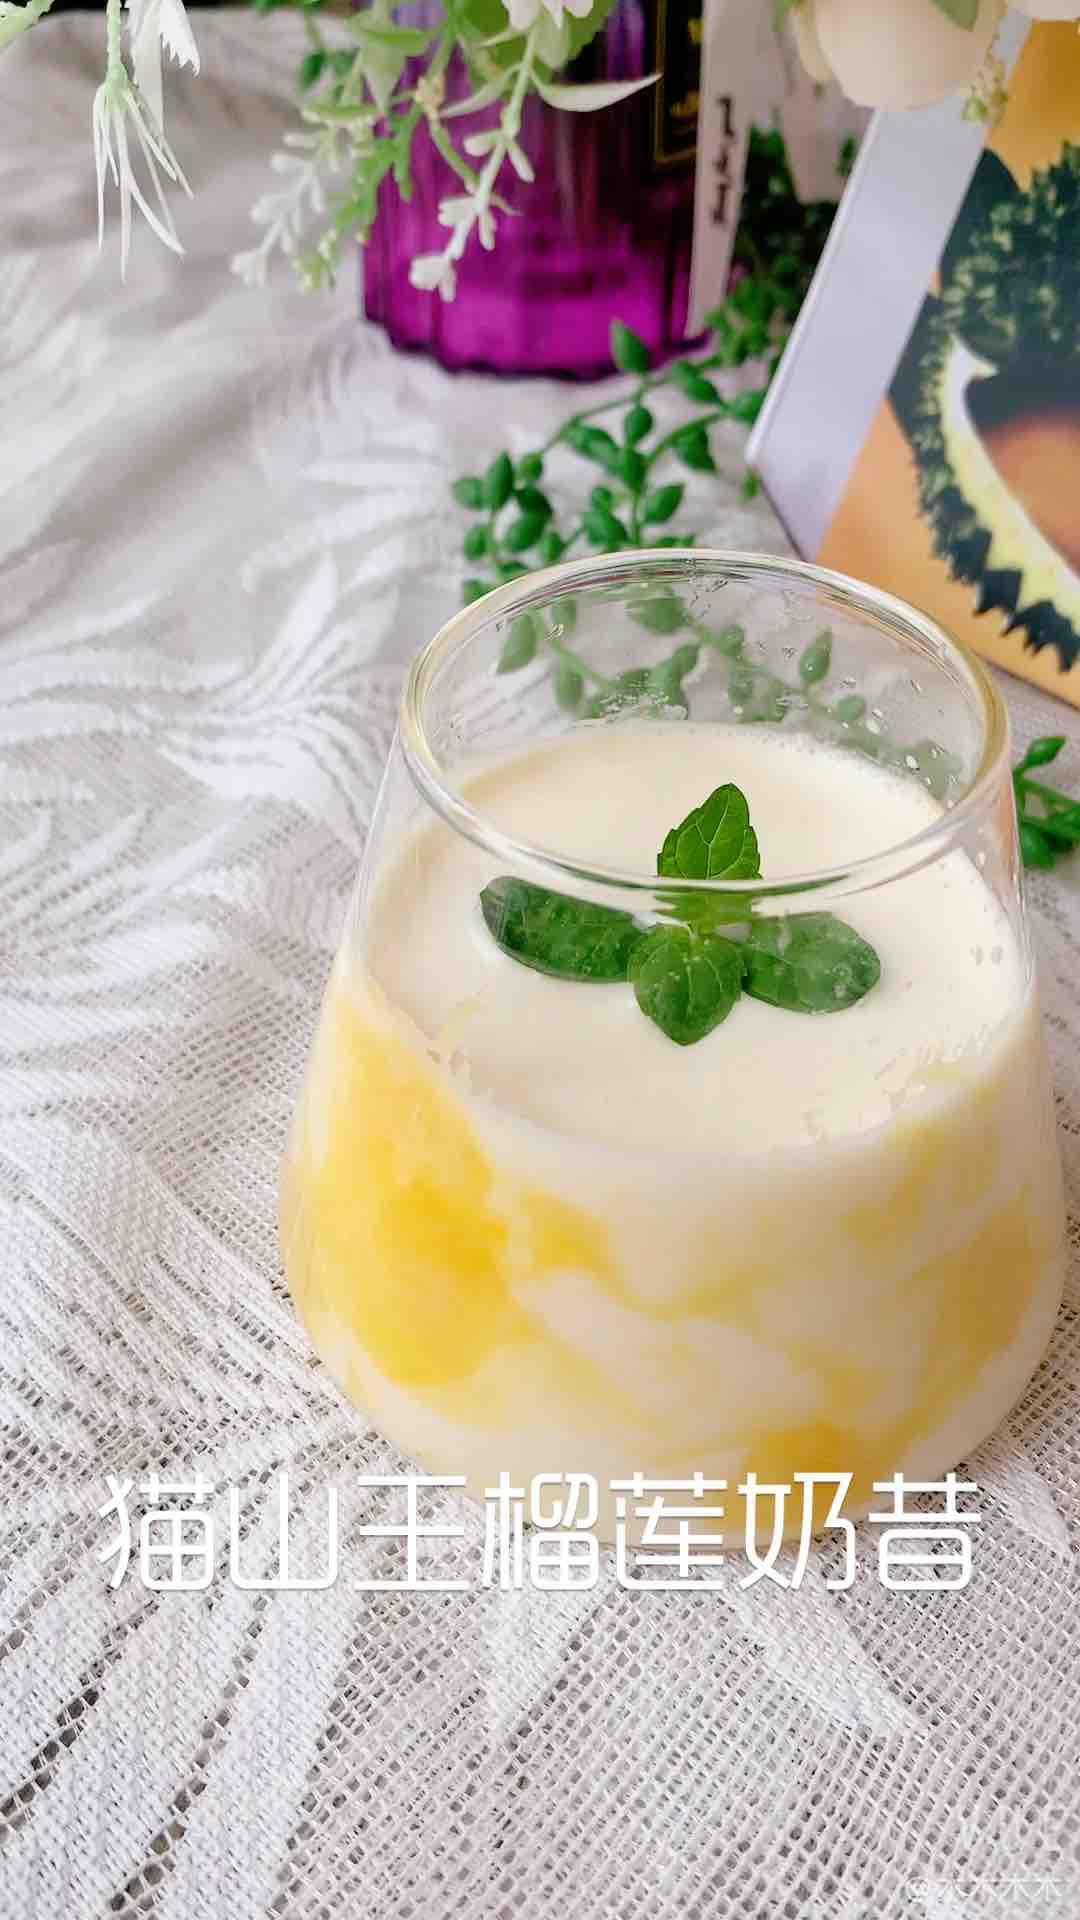 Musang King Durian Milkshake in One Bite